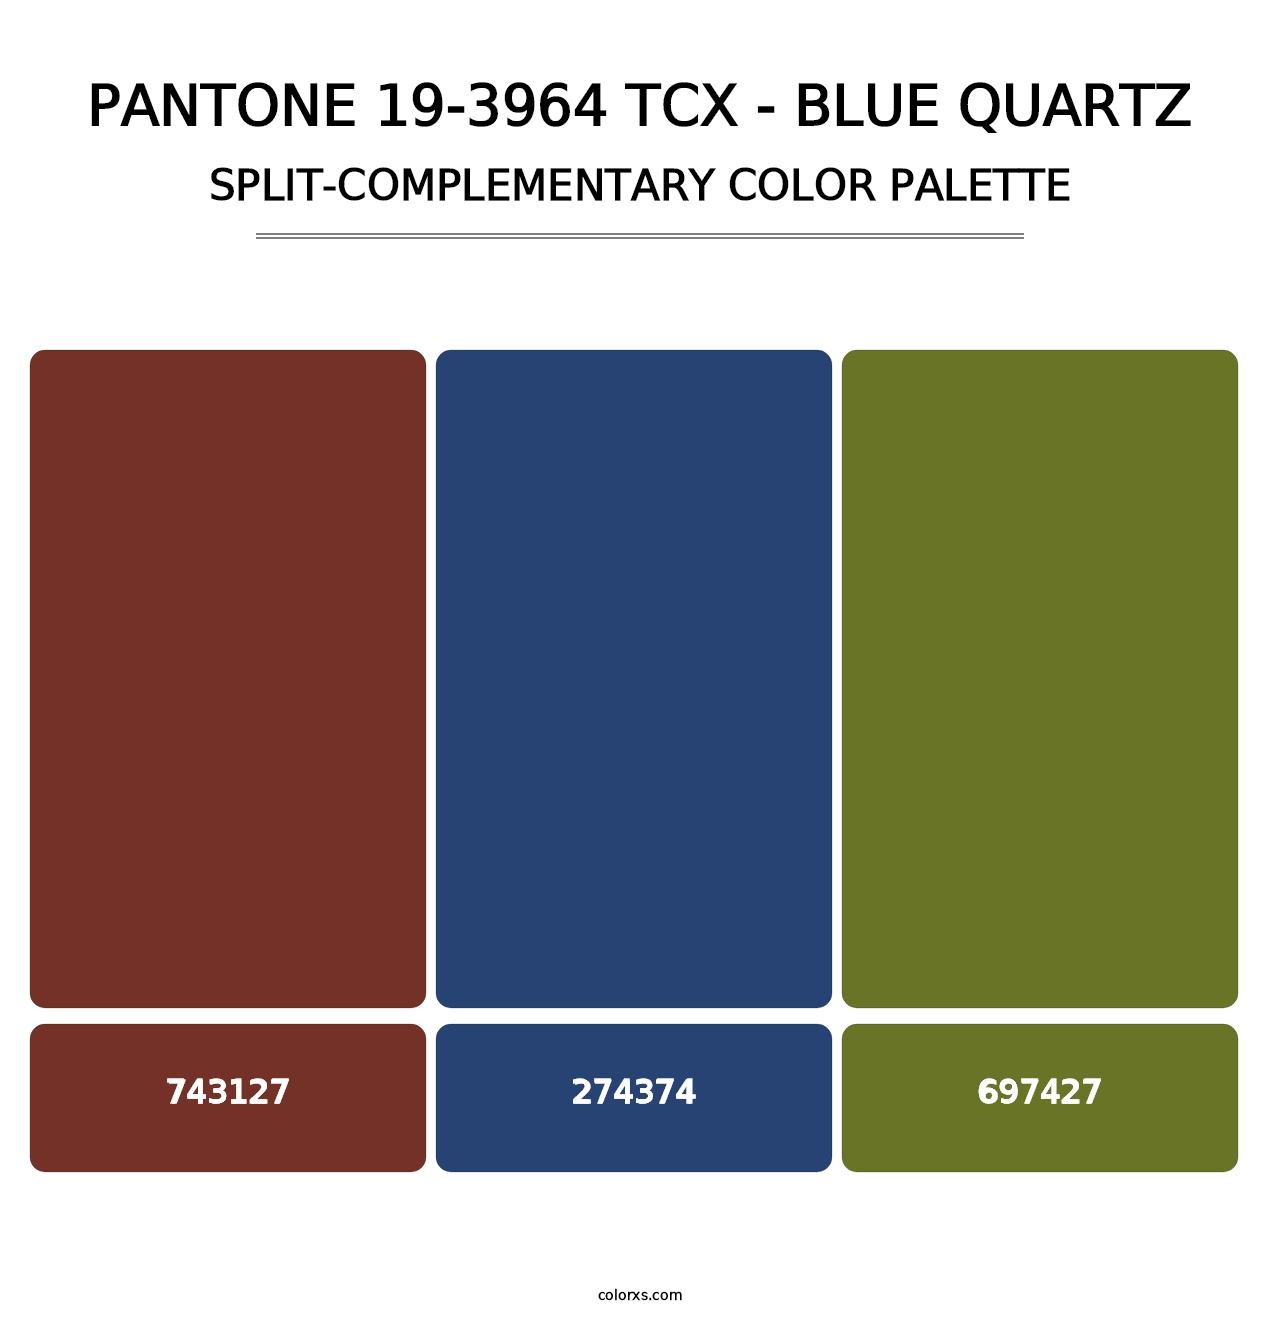 PANTONE 19-3964 TCX - Blue Quartz - Split-Complementary Color Palette